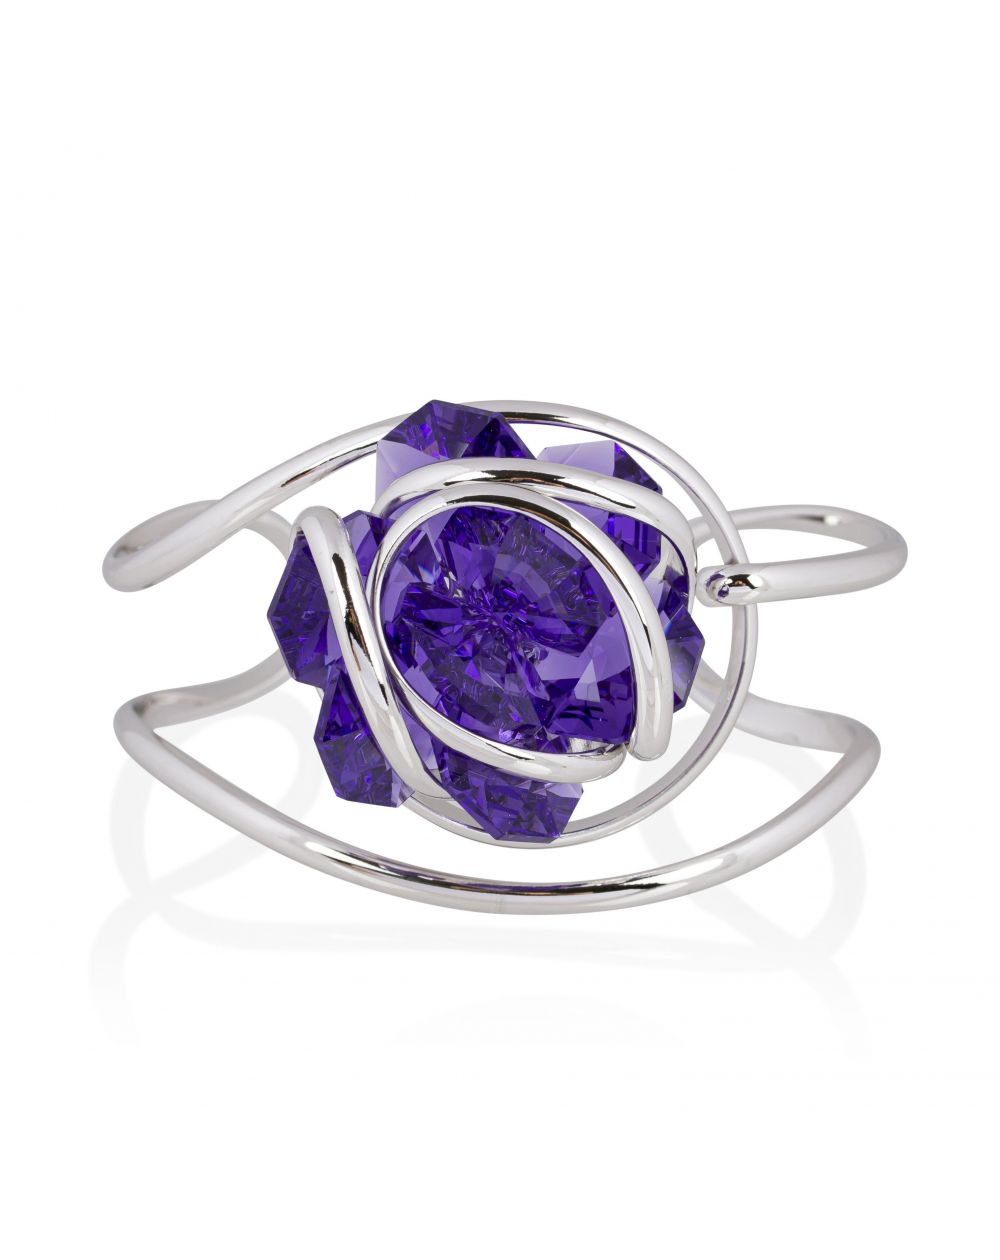 Andrea Marazzini bijoux - Bracelet cristal Swarovski Flower F15 Violet